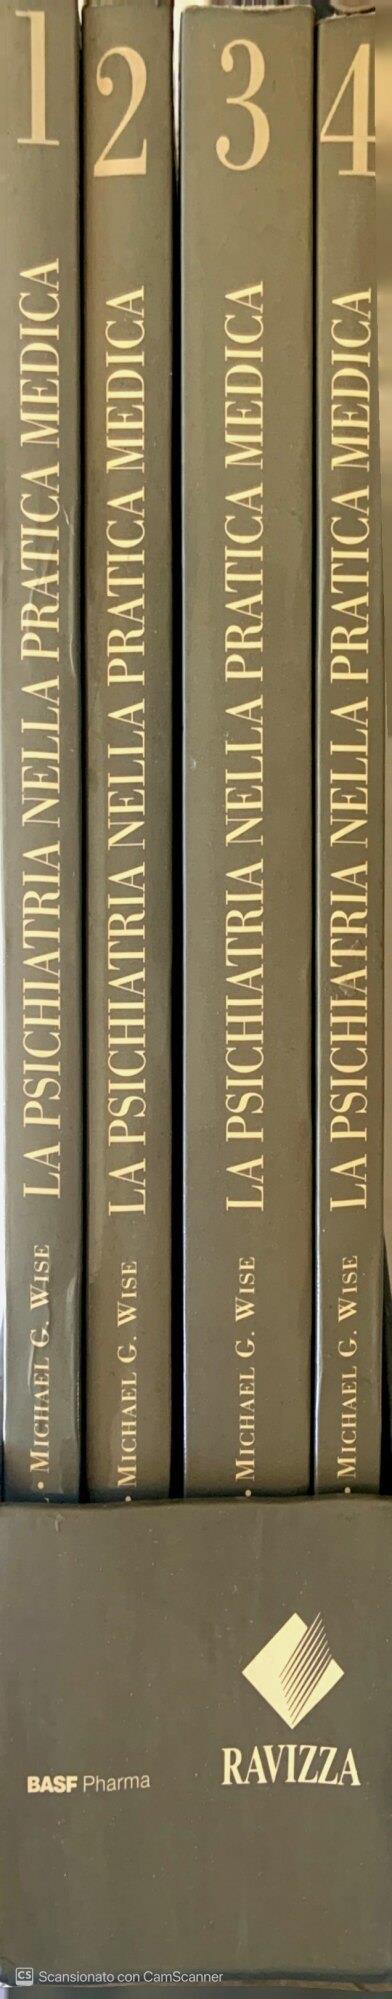 La psichiatria nella pratica medica. Vol. 1-2-3-4 - James R. Rundell - copertina